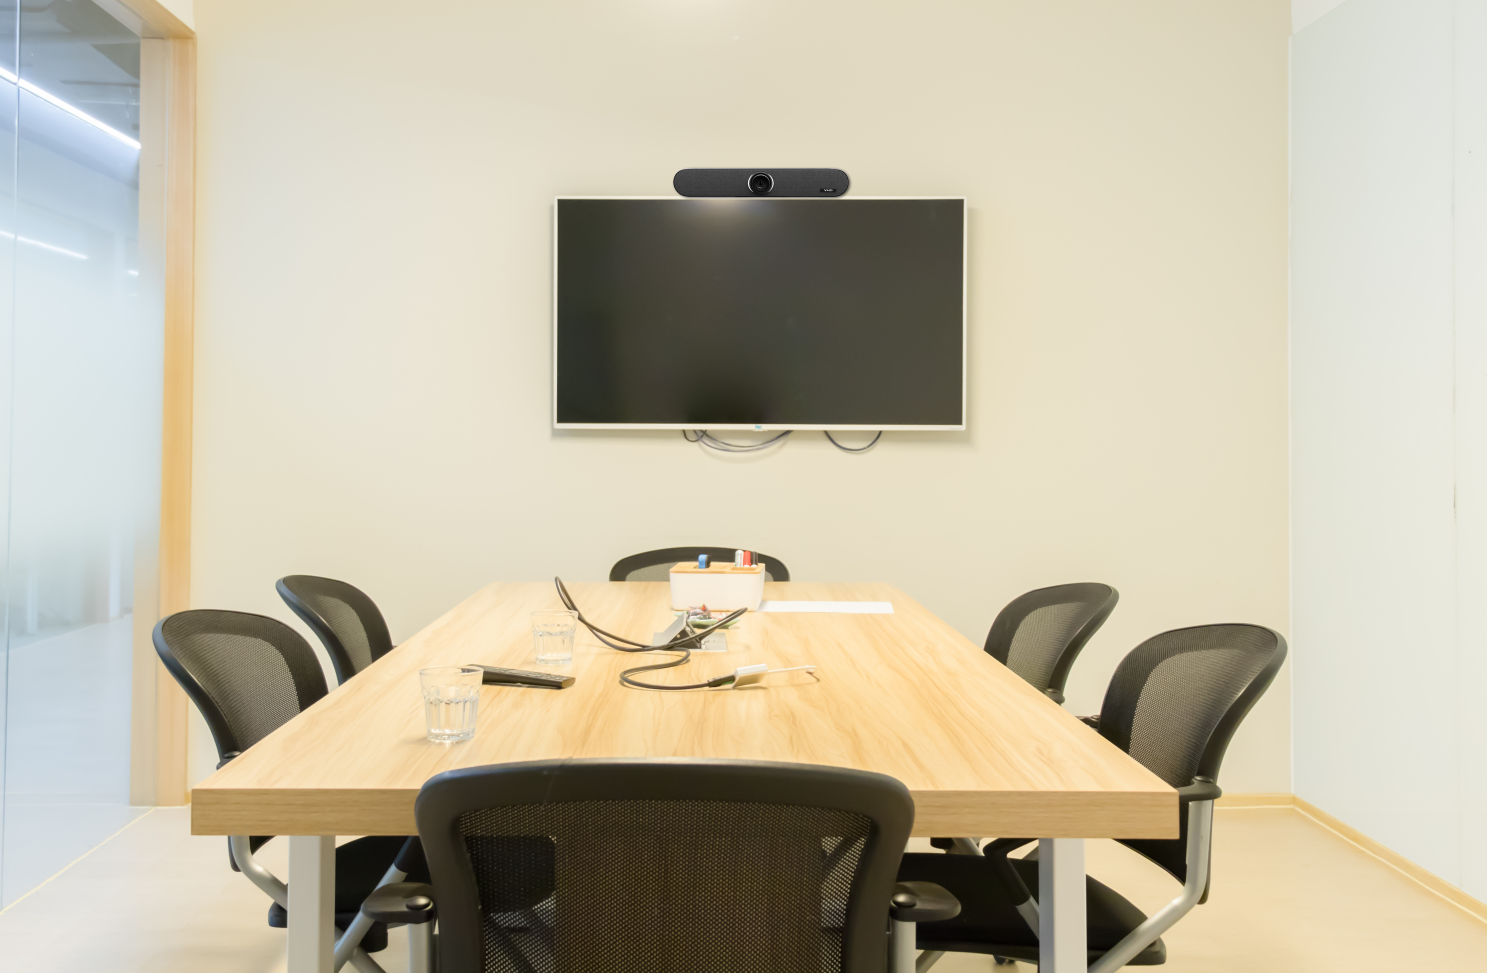 维海德:小型会议室快速开一场远程协作好会议的秘诀